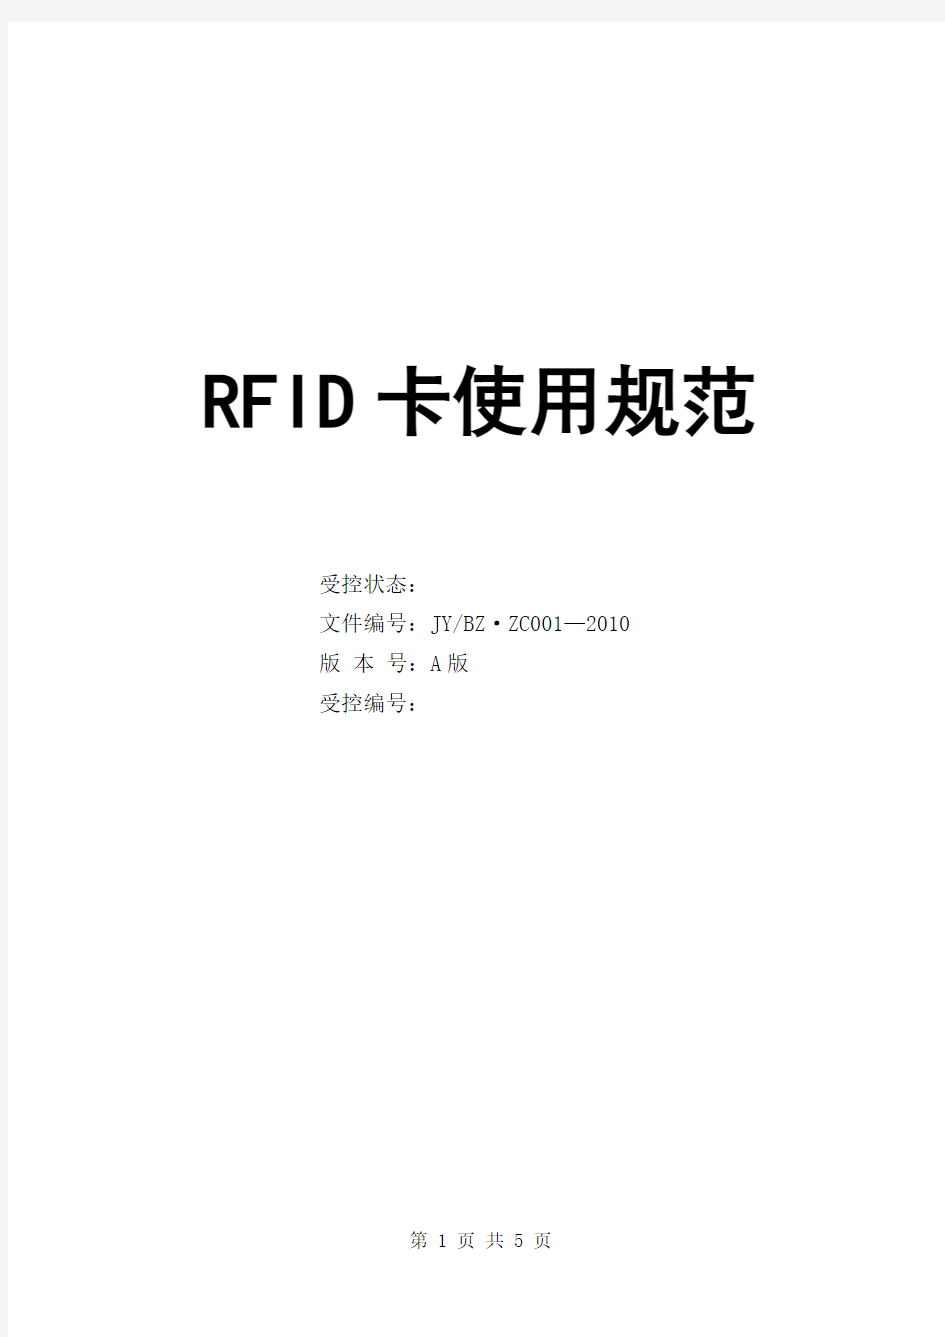 RFID卡使用规范